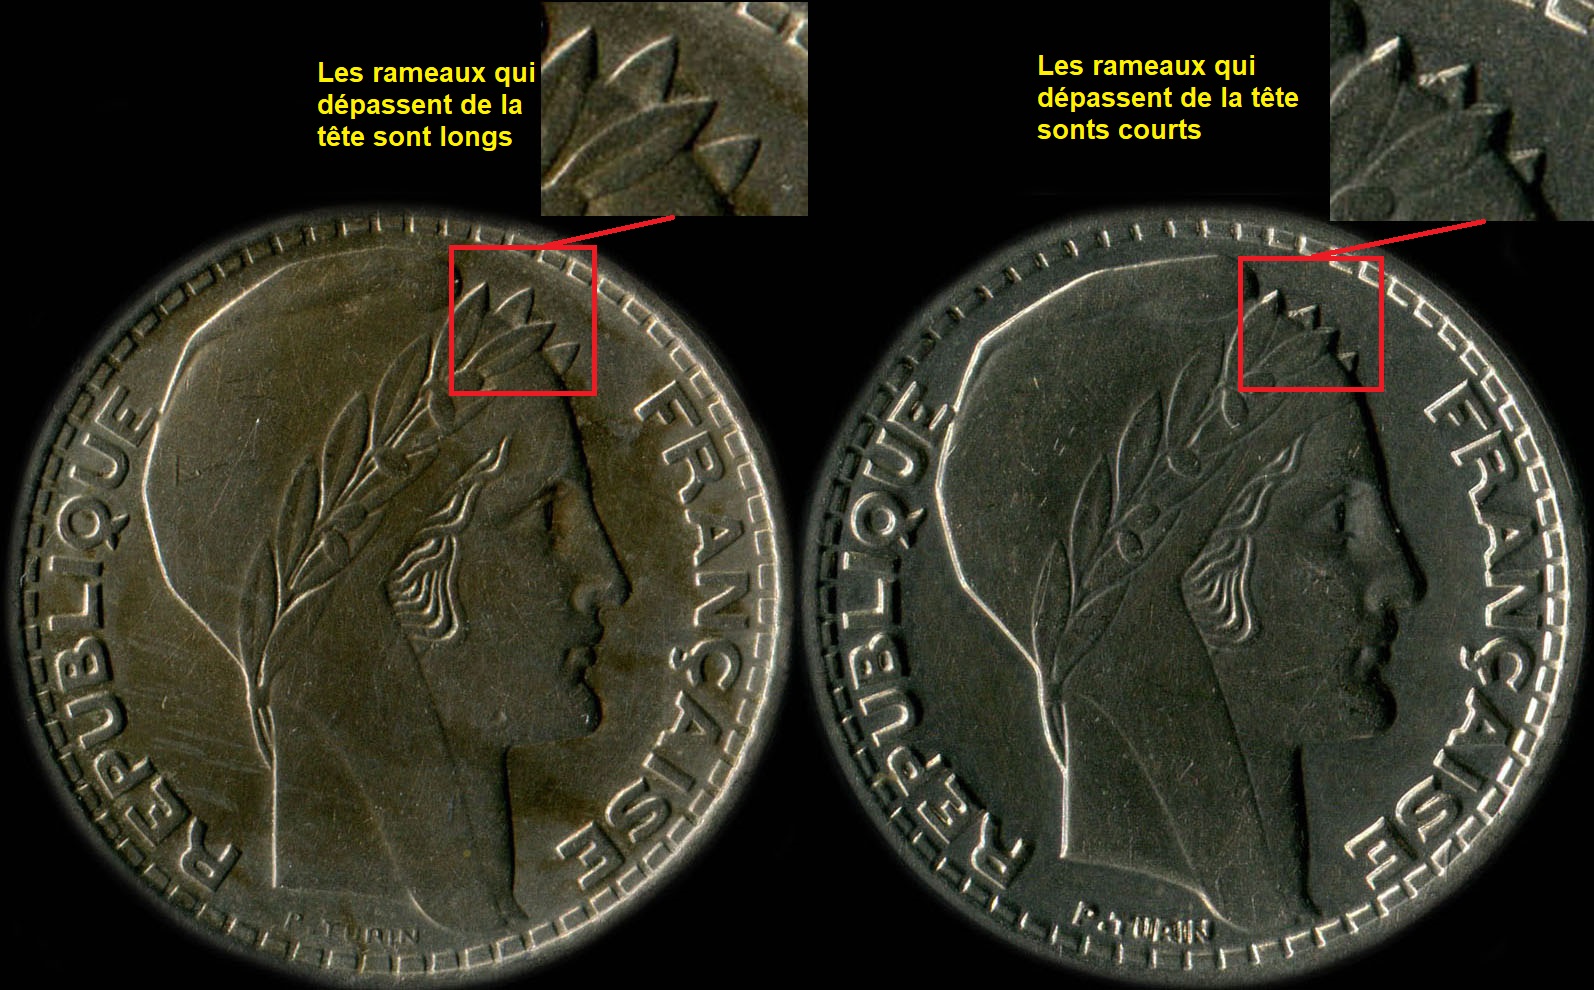 Variantes rameaux courts / rameaux longs de la pice de 10 francs Turun 1945, 1946 et 1946B